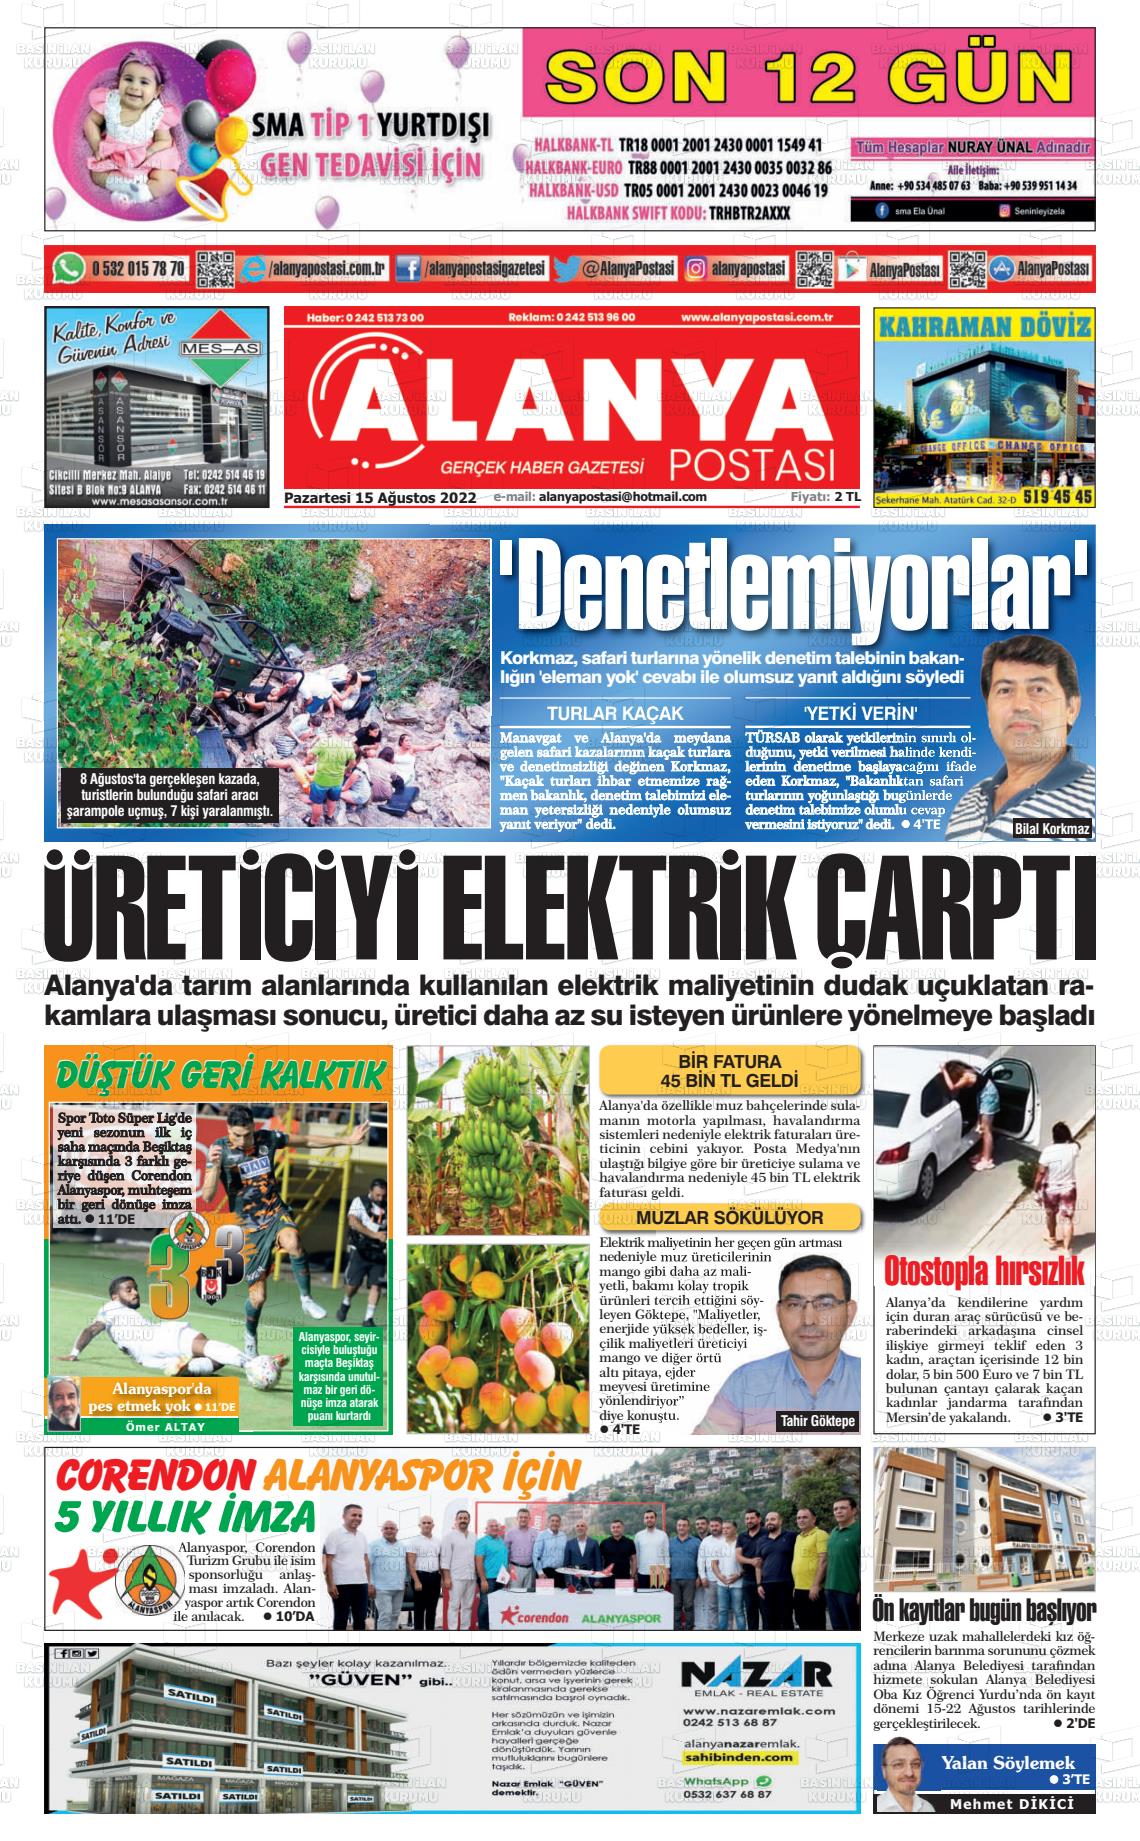 15 Ağustos 2022 Alanya Postası Gazete Manşeti